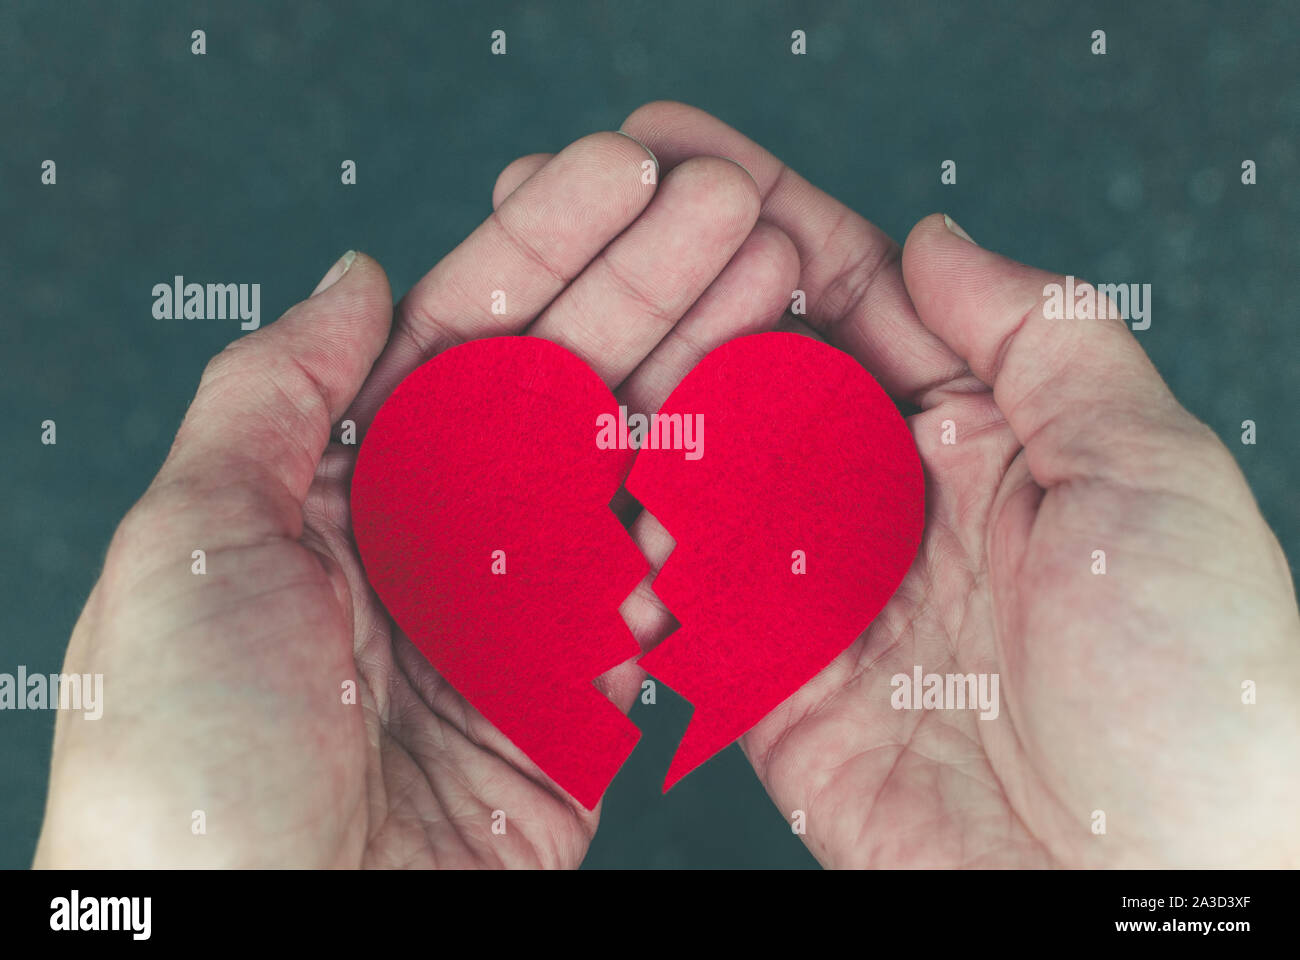 Broken heart in the hands - divorce concept Stock Photo